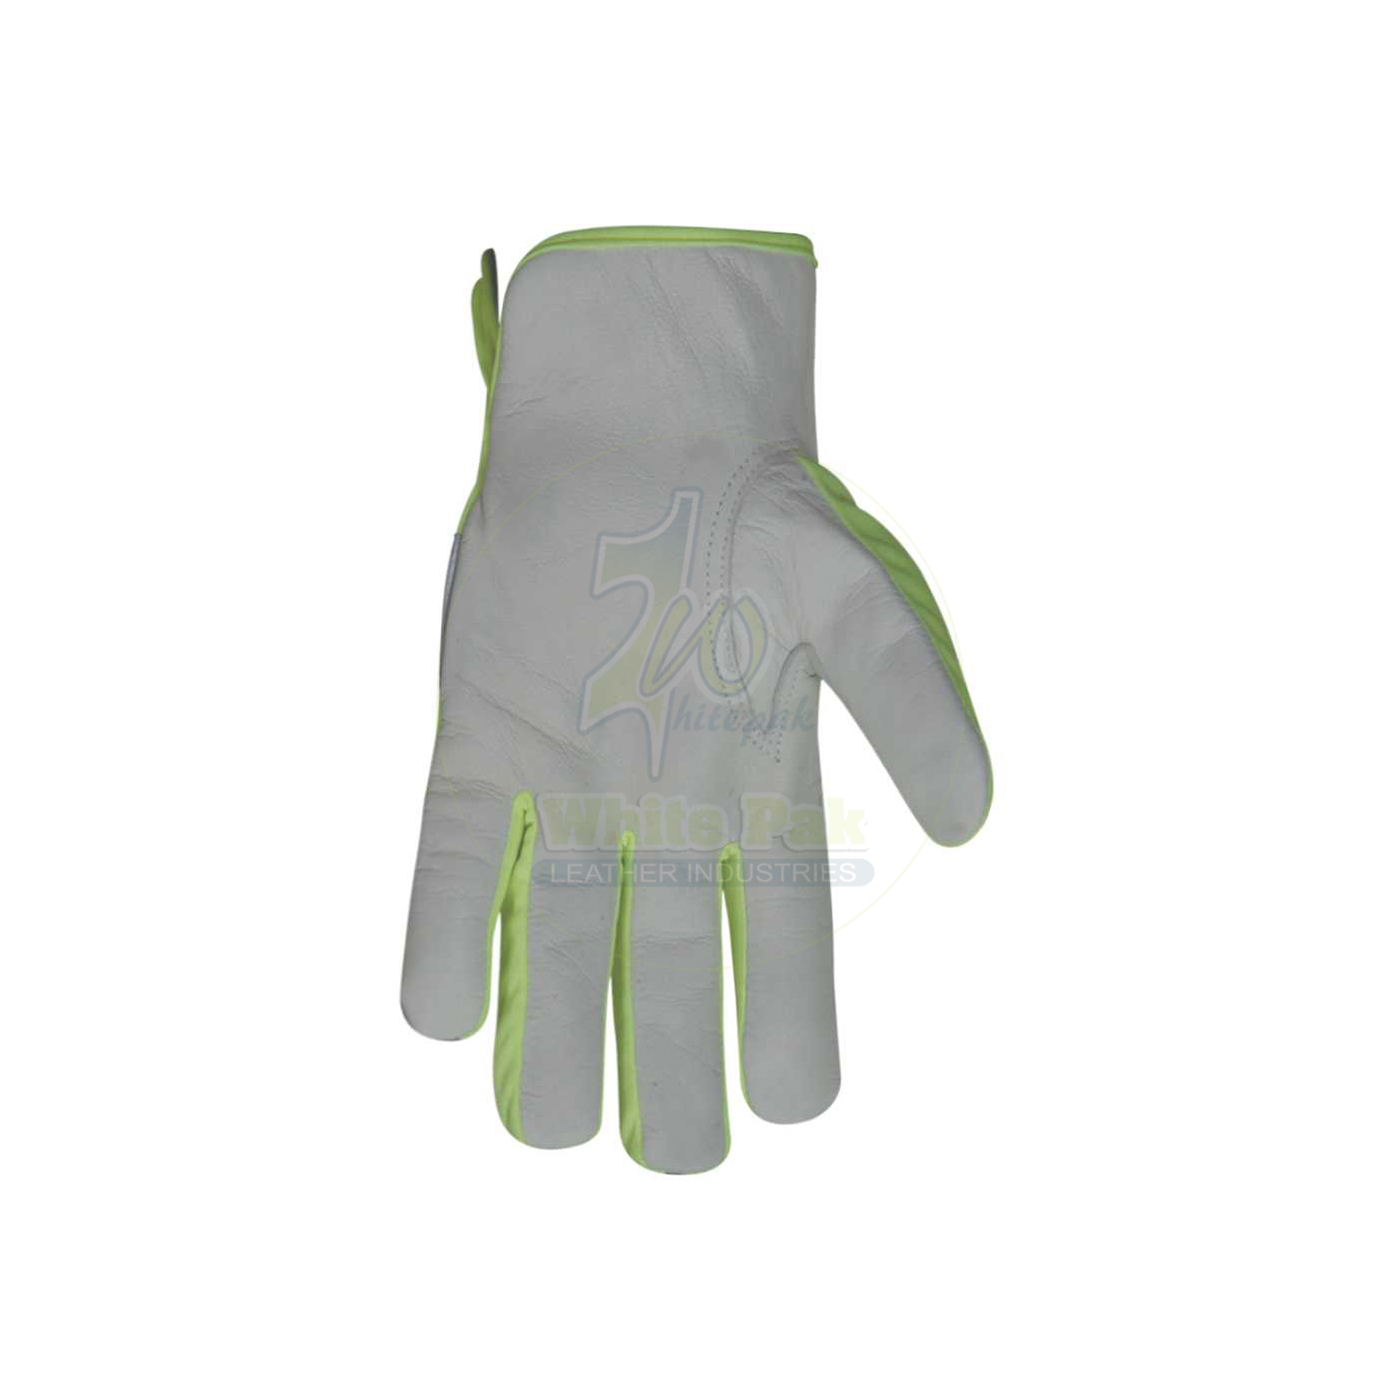 Hi-Visibility Assembling Gloves